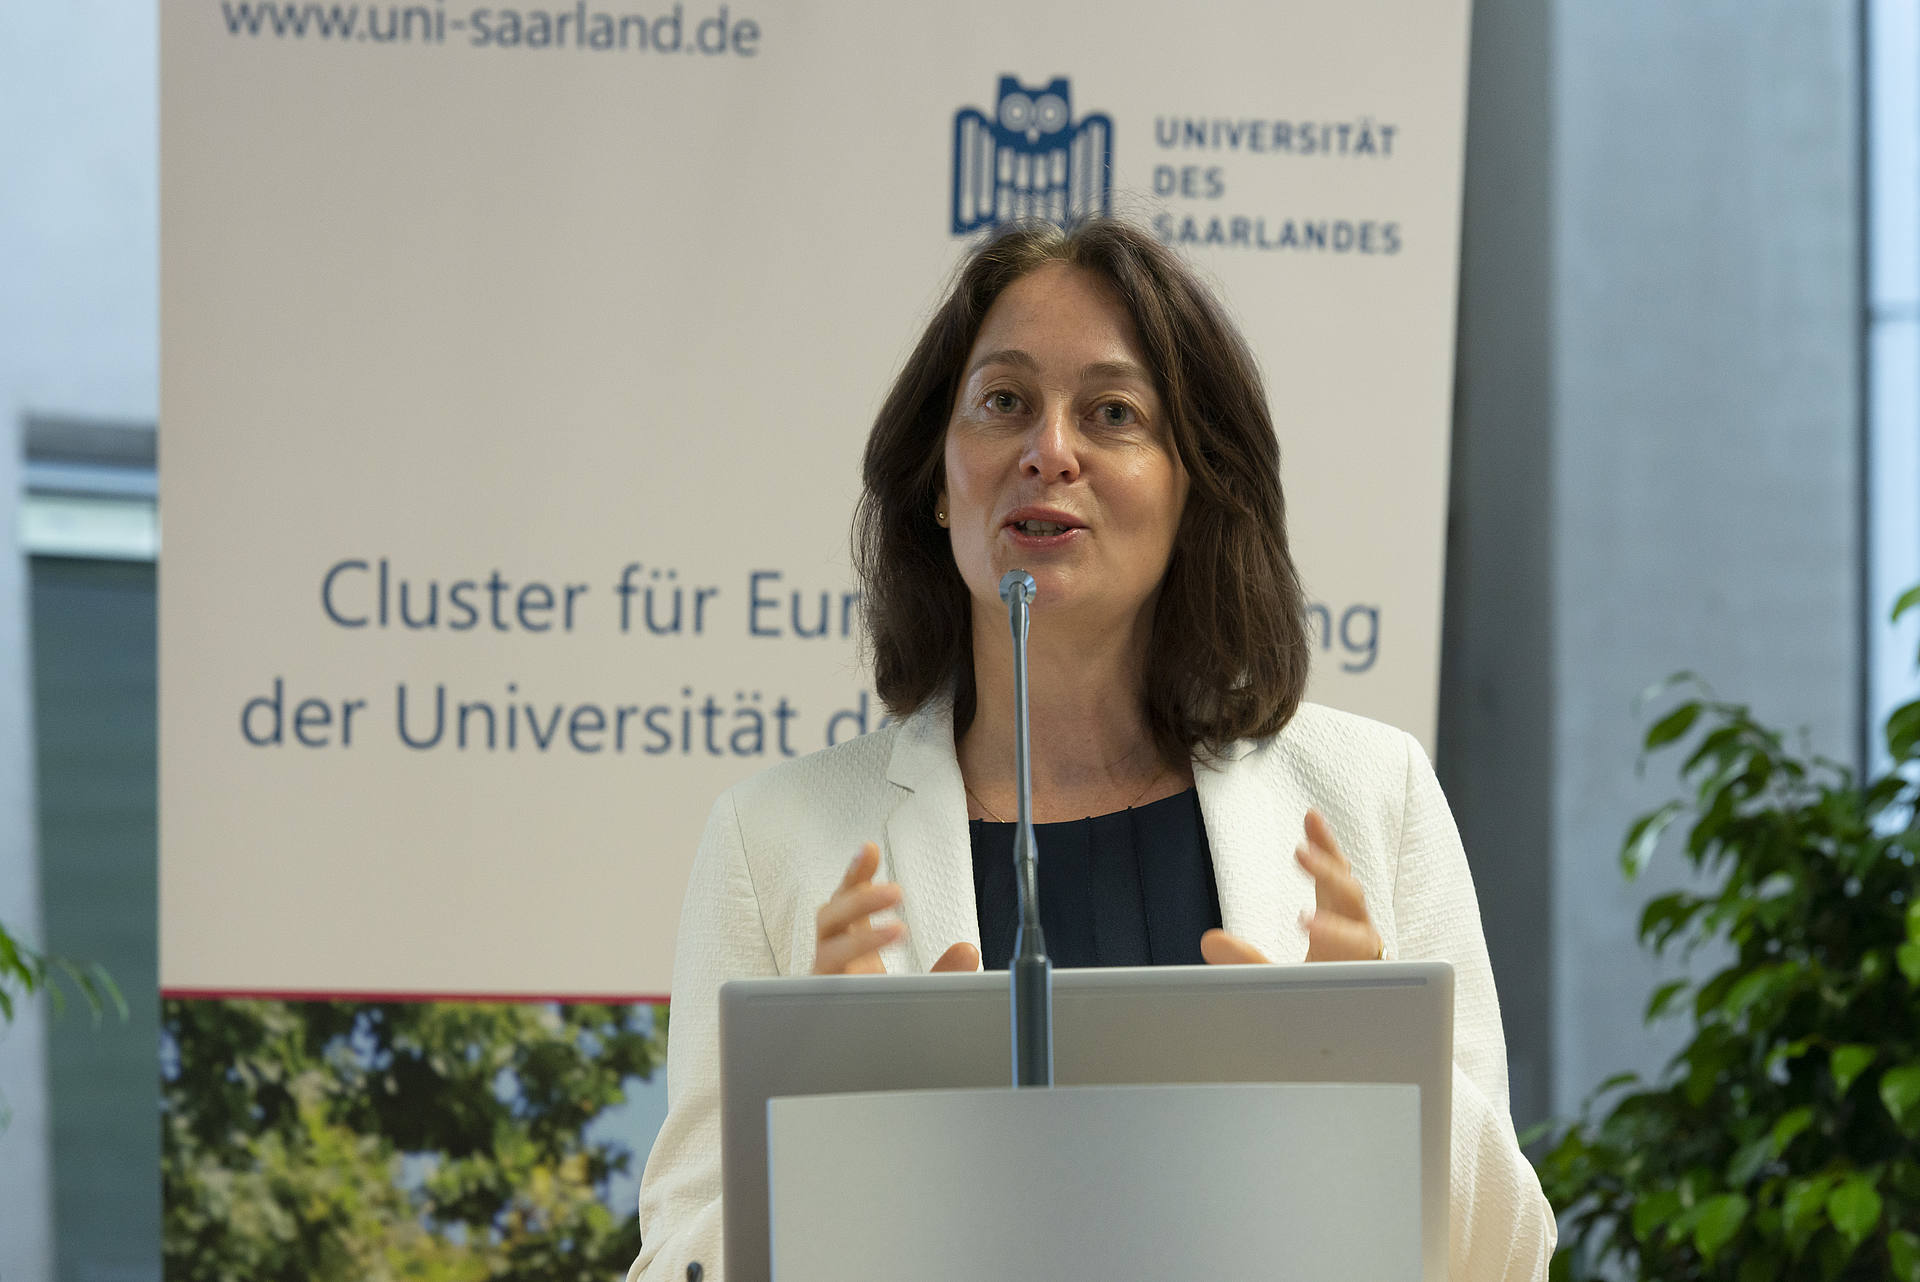 Katarina Barley, Mitglied und Vizepräsidentin des Europäischen Parlaments, hält die Keynote der 3. Saarbrücker Europa-Konferenz. Sie steht am Rednerinnenpult vor dem Roll-up des Clusters für Europaforschung der Universität des Saarlandes.